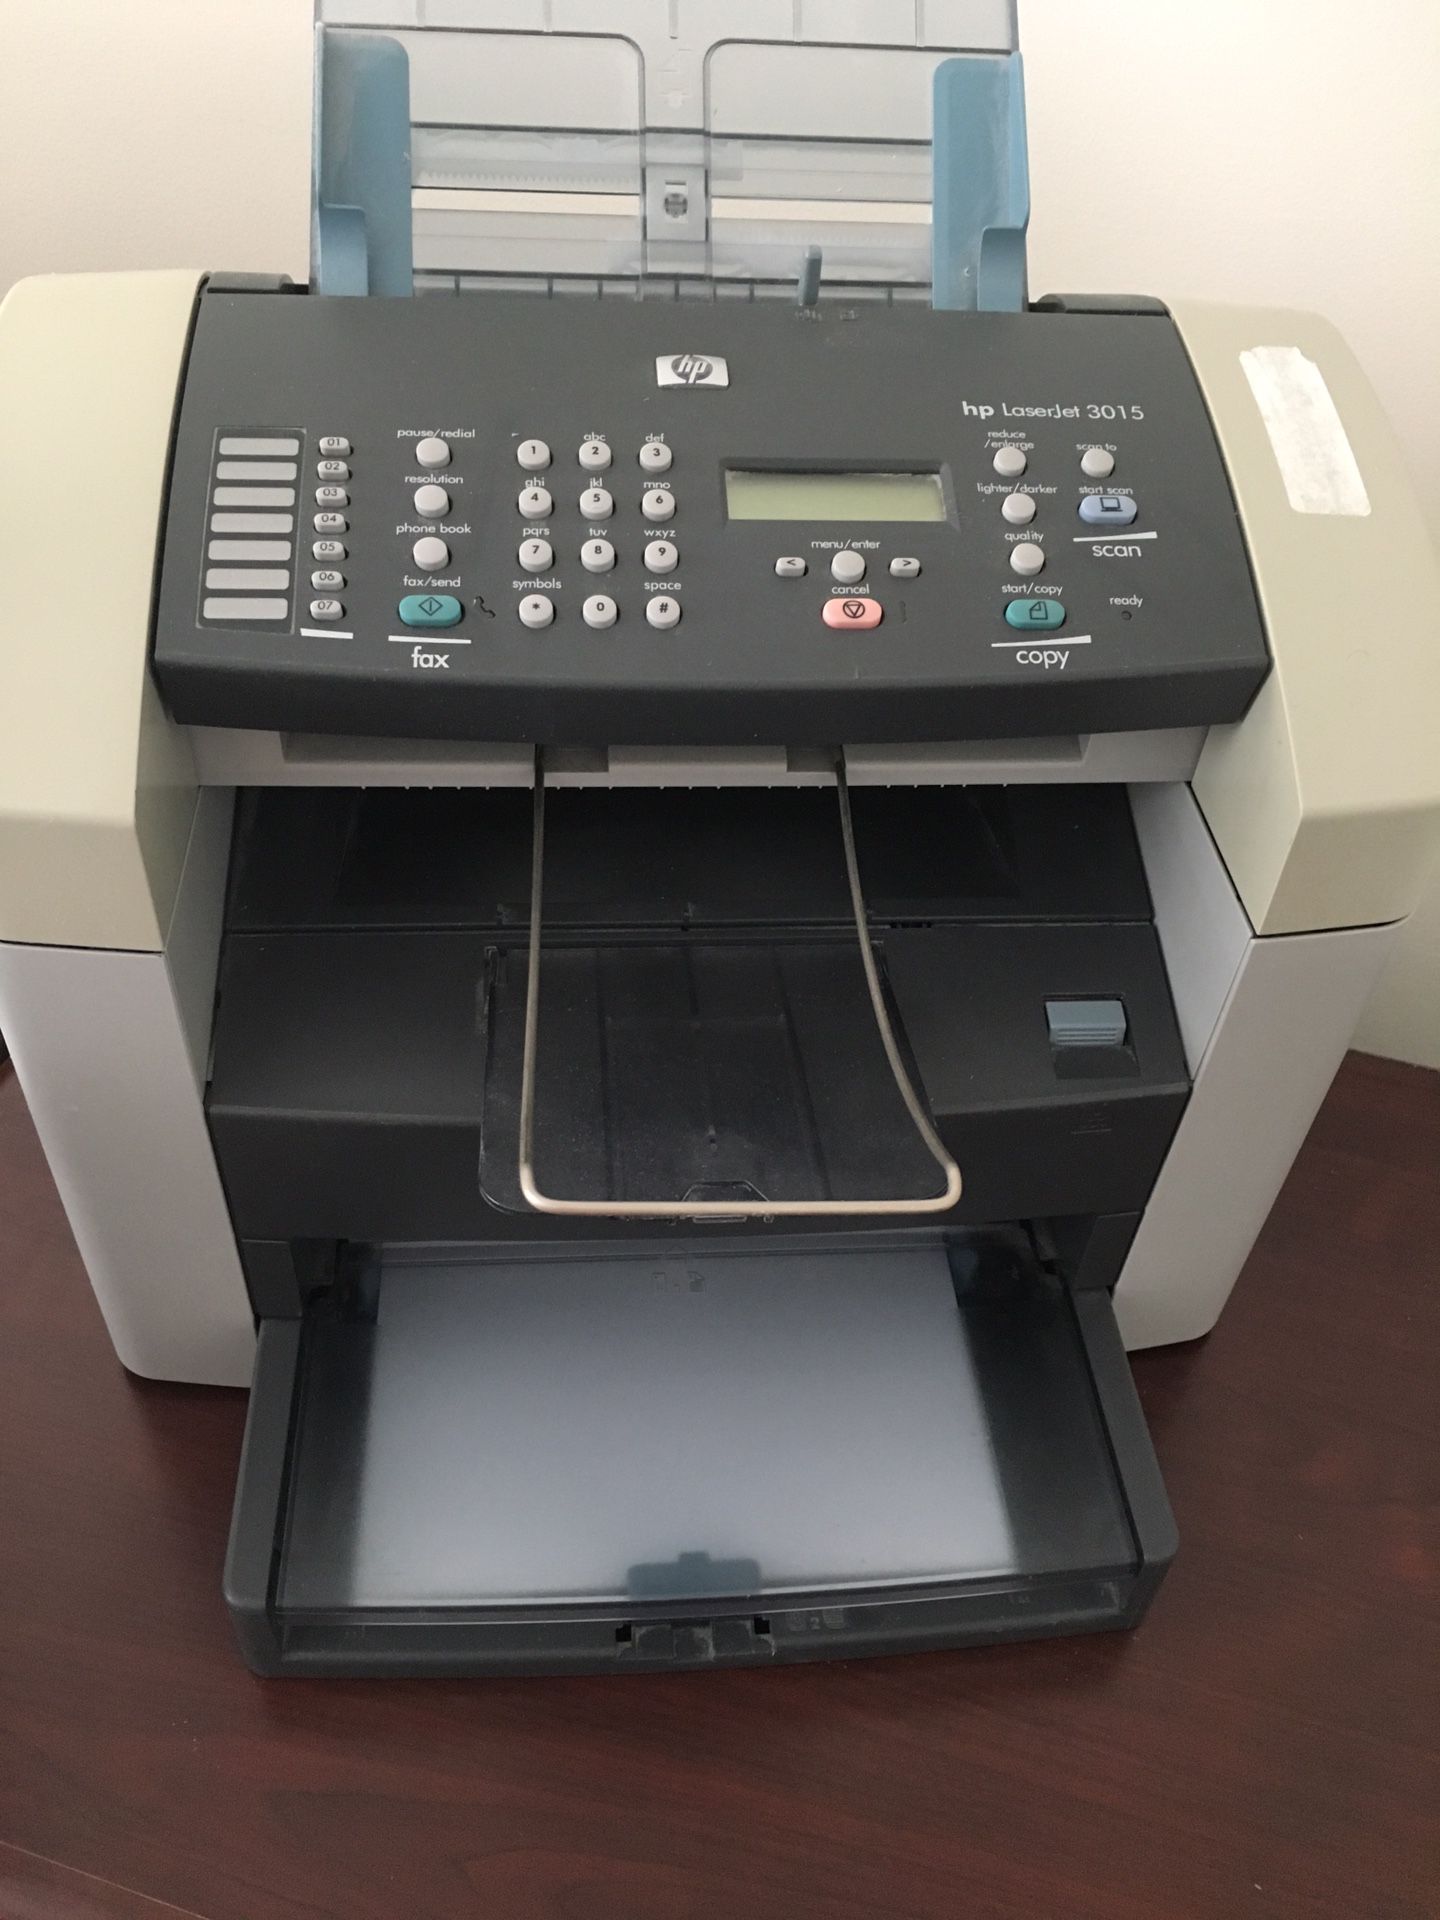 HP LaserJet 3015 Printer Fax Copier All in One